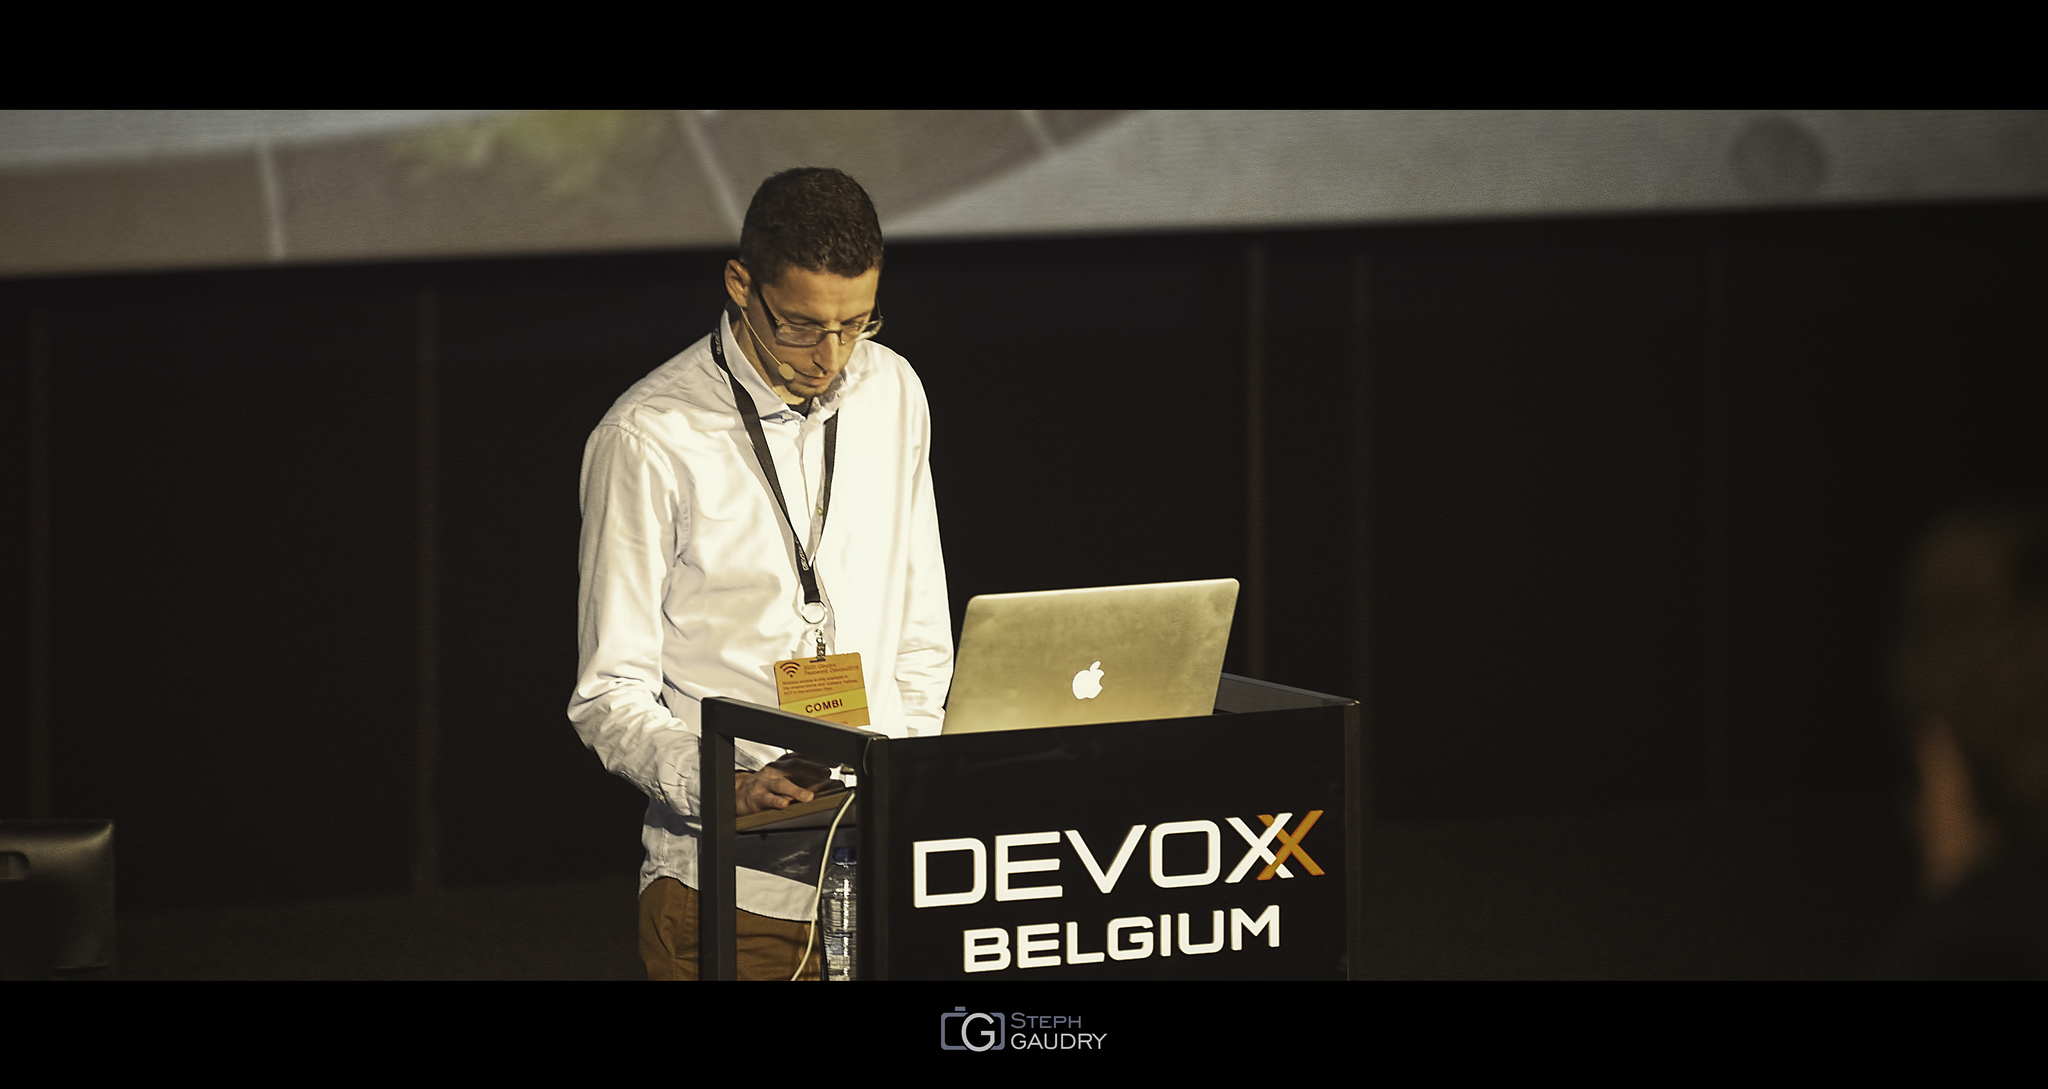 Tom Vleminckx @ Devoxx2015 - JMH [Klik om de diavoorstelling te starten]